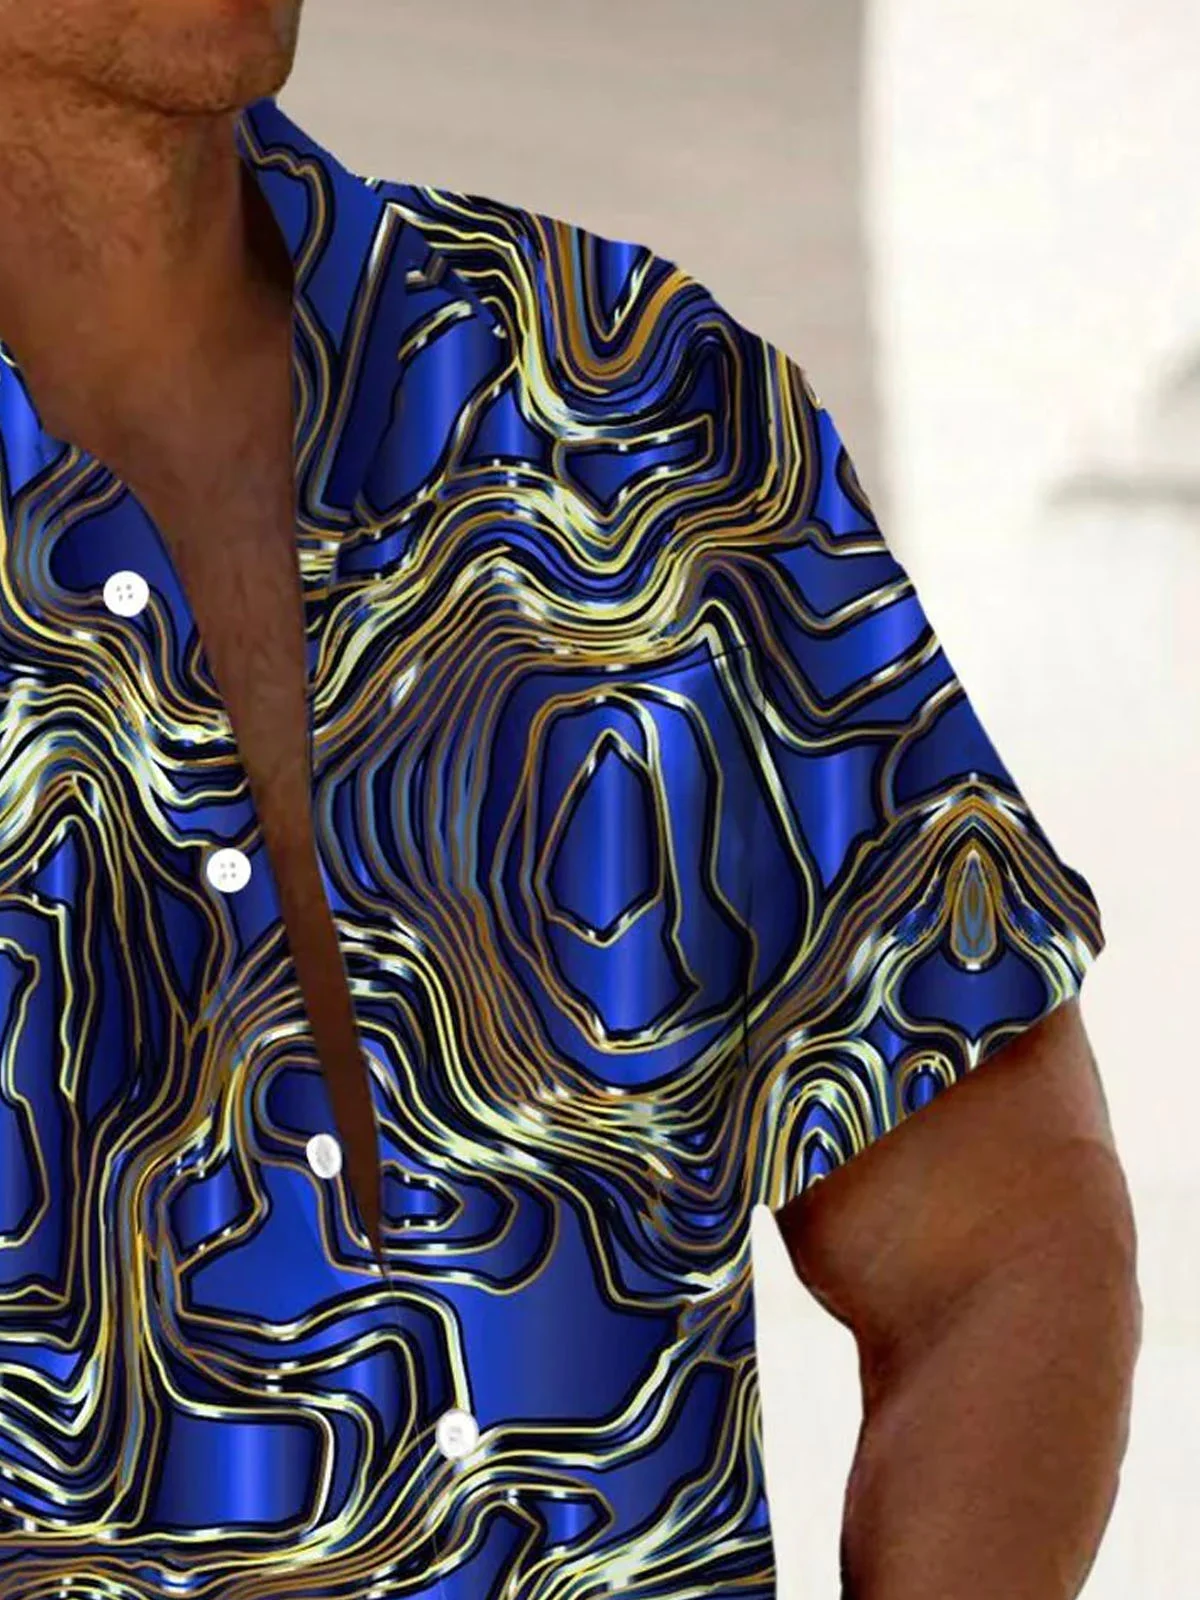 Royaura®Retro Art Textured 3D Gilt Print Men's Button Pocket Short Sleeve Shirt